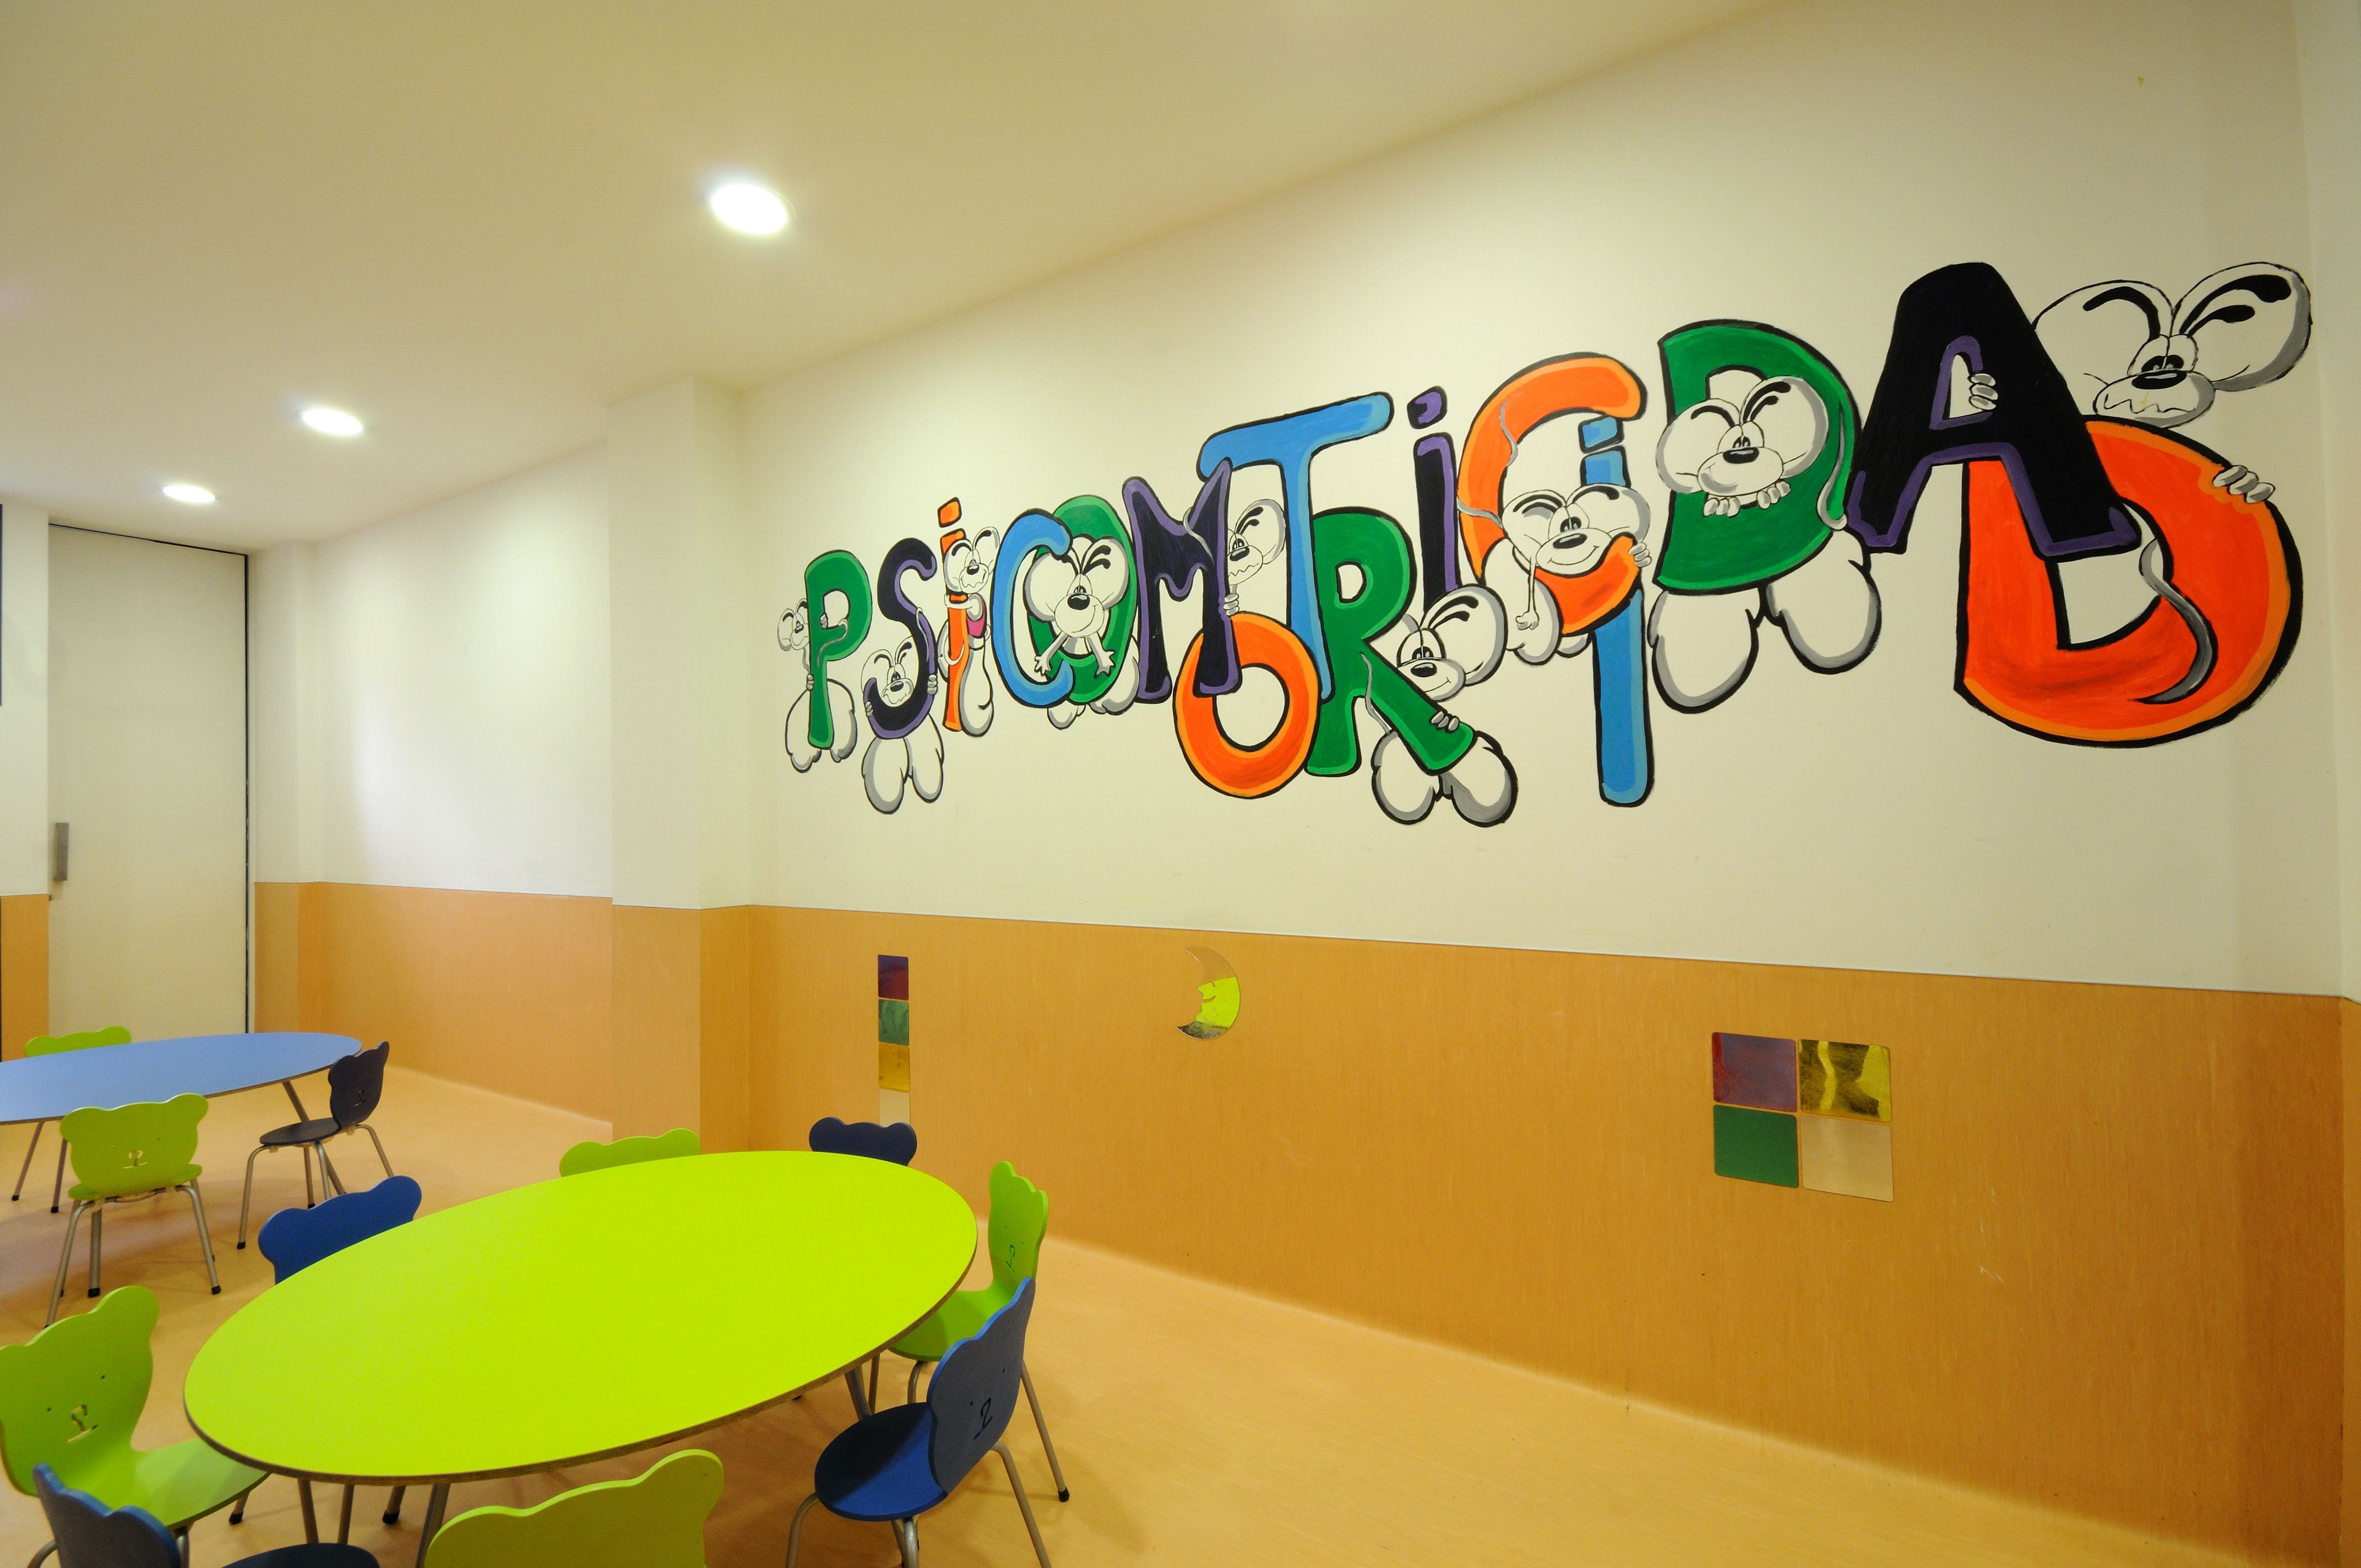 Foto 7 de Guarderías y Escuelas infantiles en Pamplona | Baby School